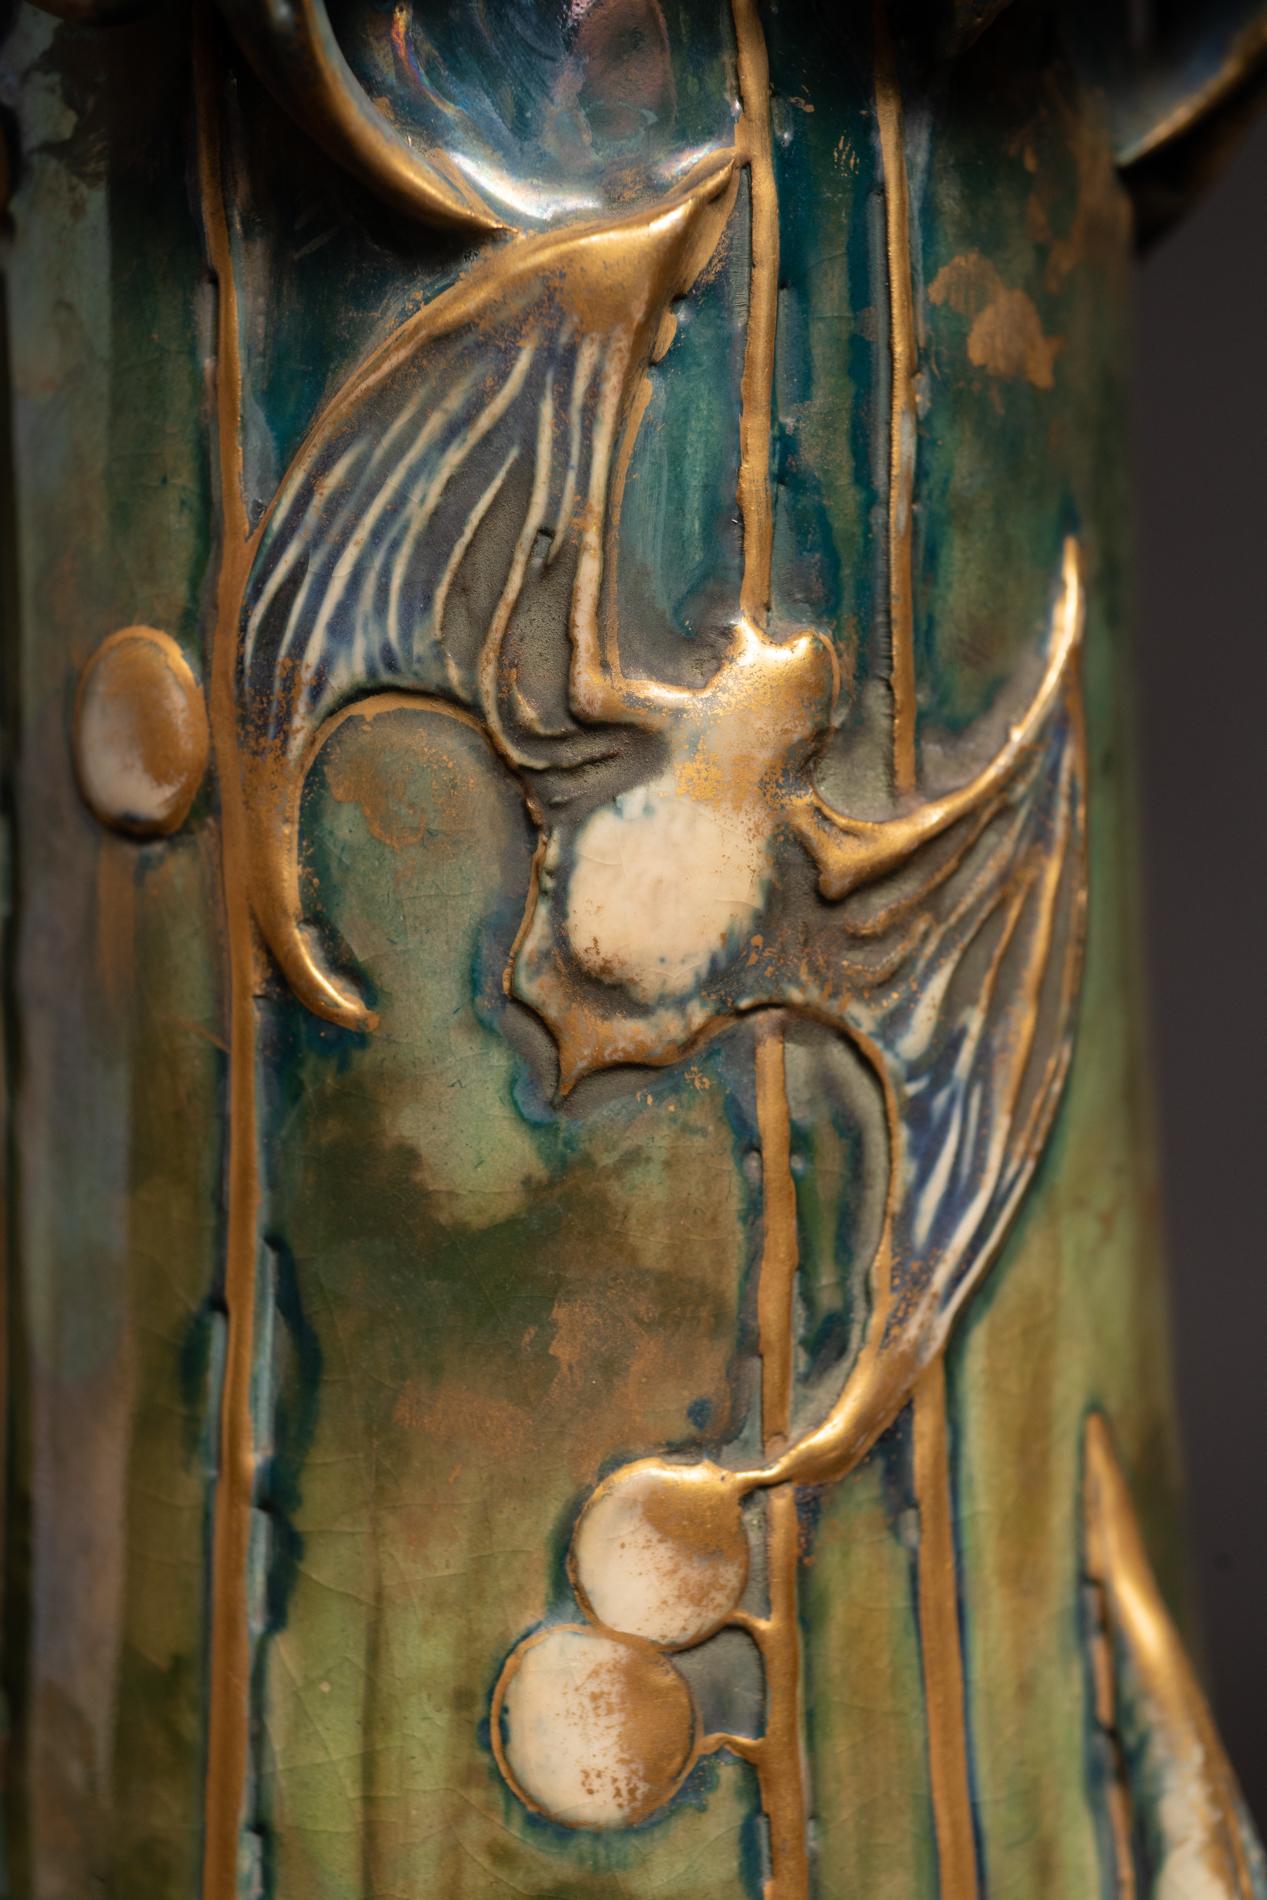 Berry Bat Amphora Vase - Art Nouveau Art by Paul Dachsel